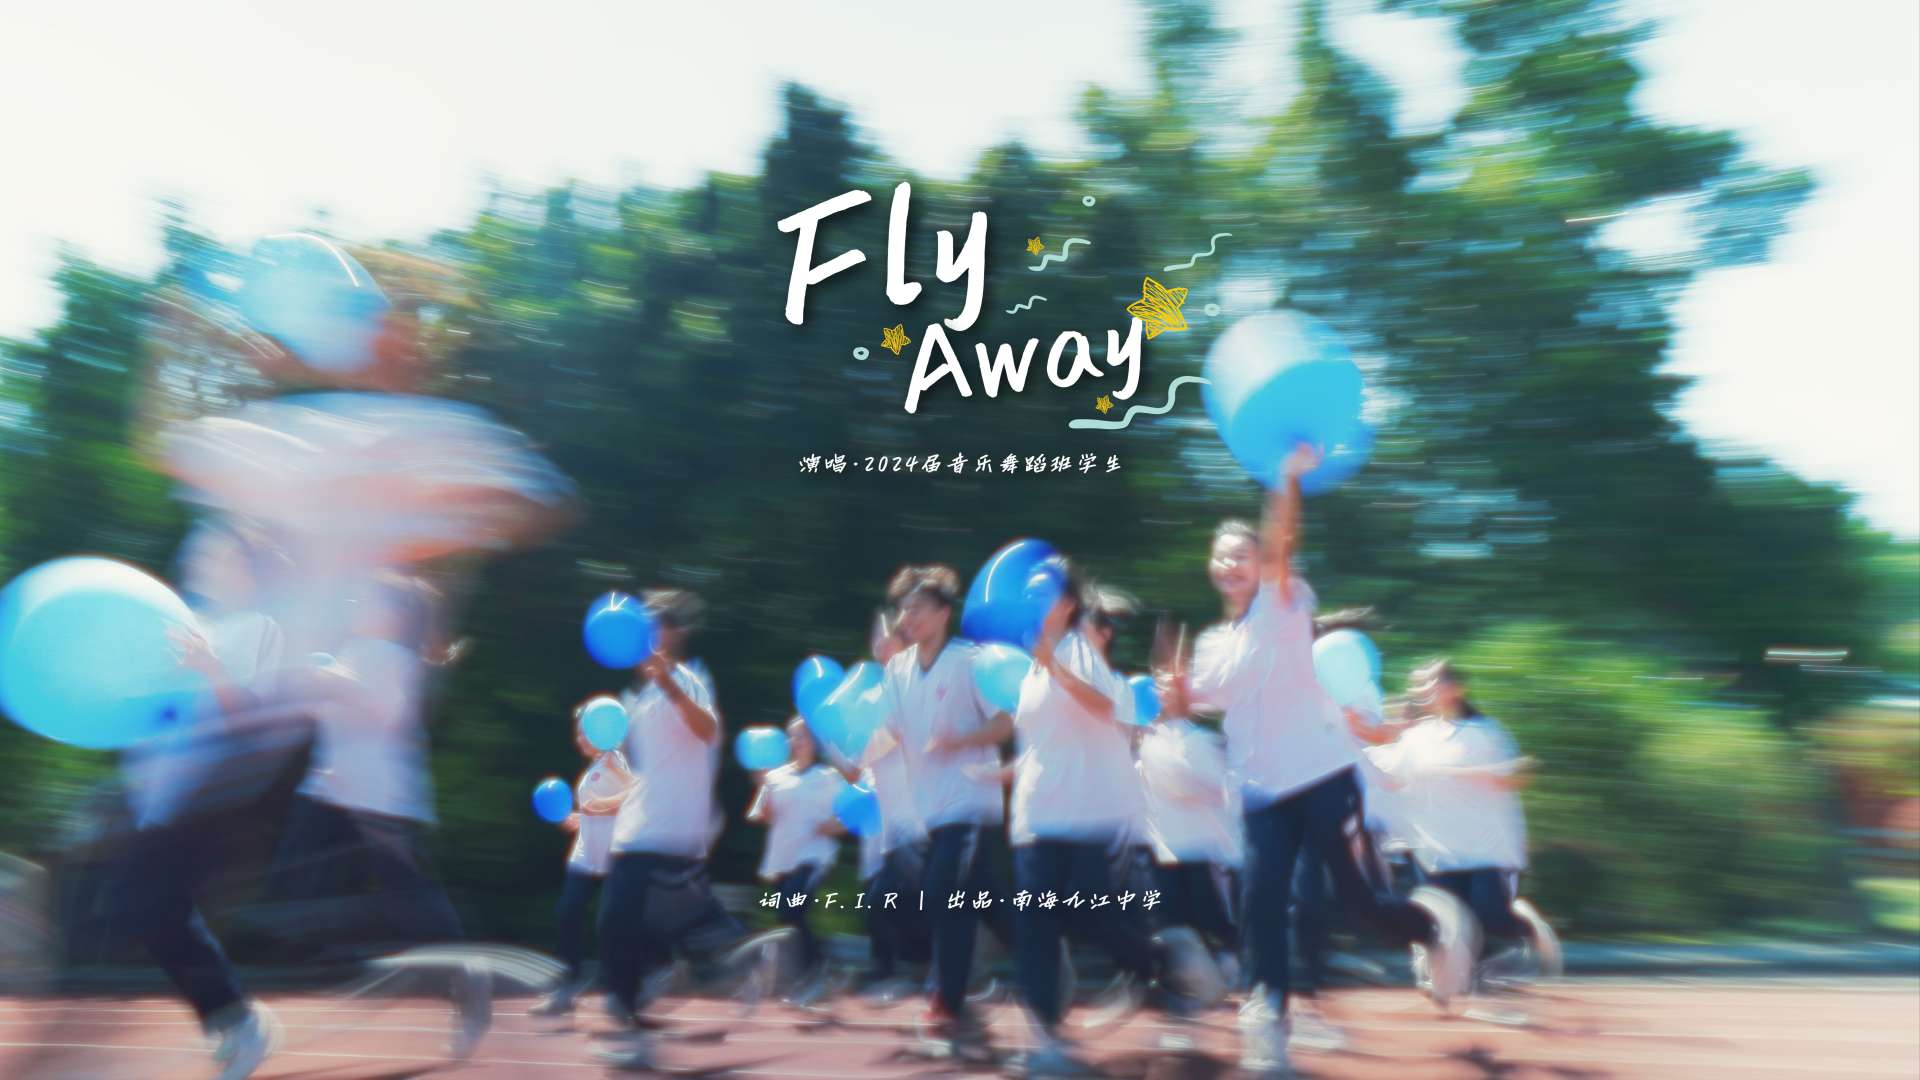 南海九江中学 | 《Fly Away》高三音乐舞蹈班纪念MV